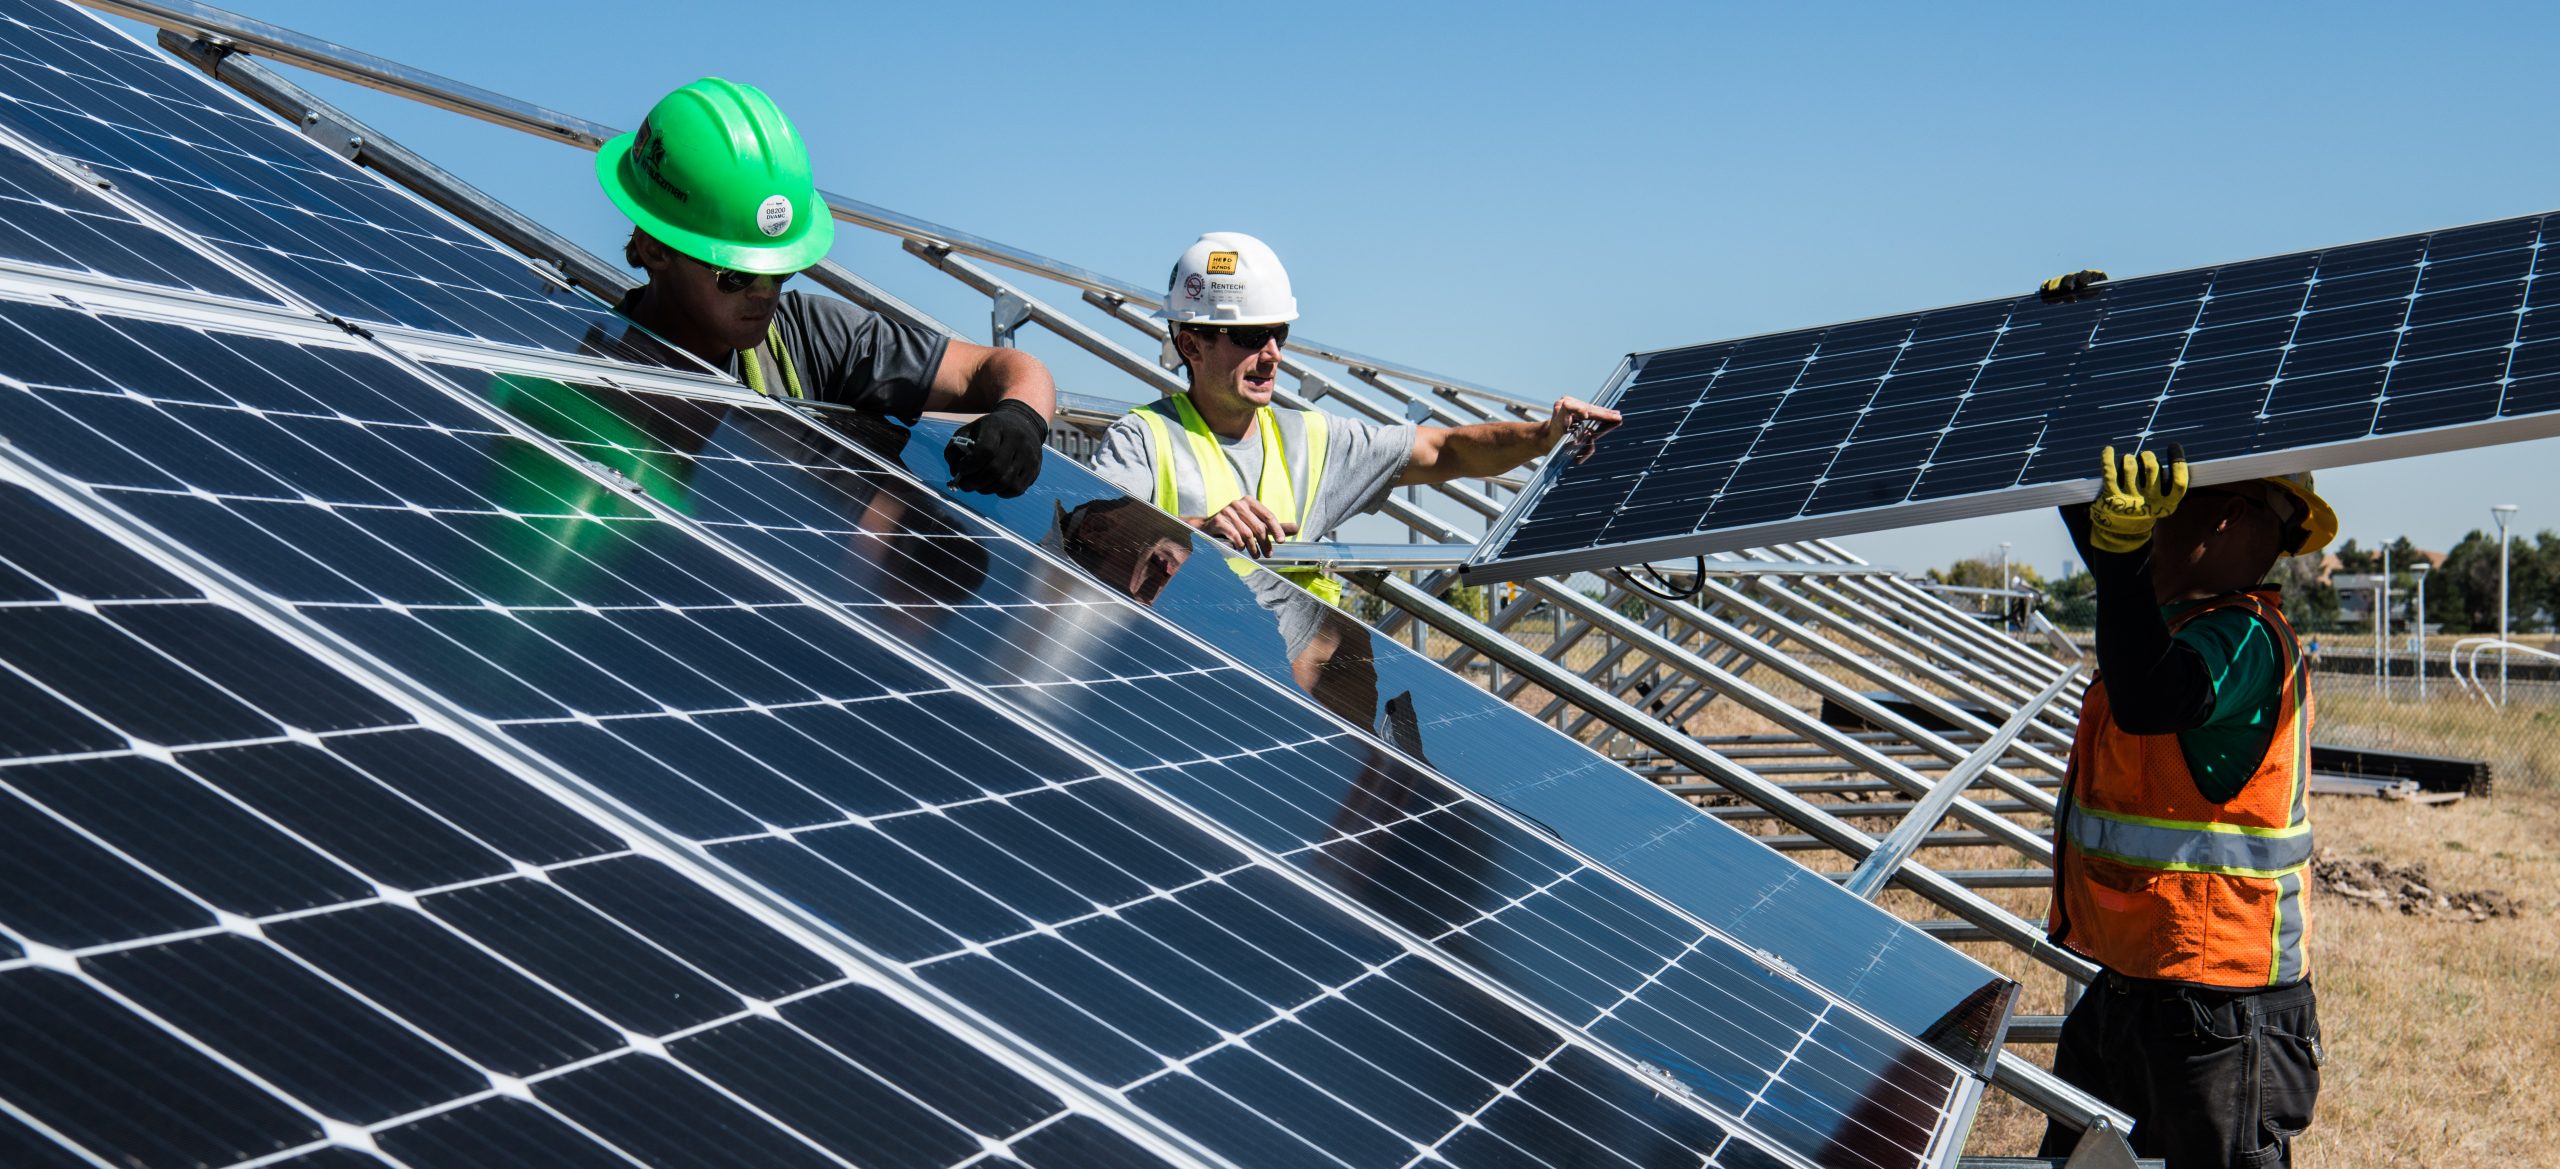 Kementerian ESDM pasang ratusan ribu panel surya di atap rumah